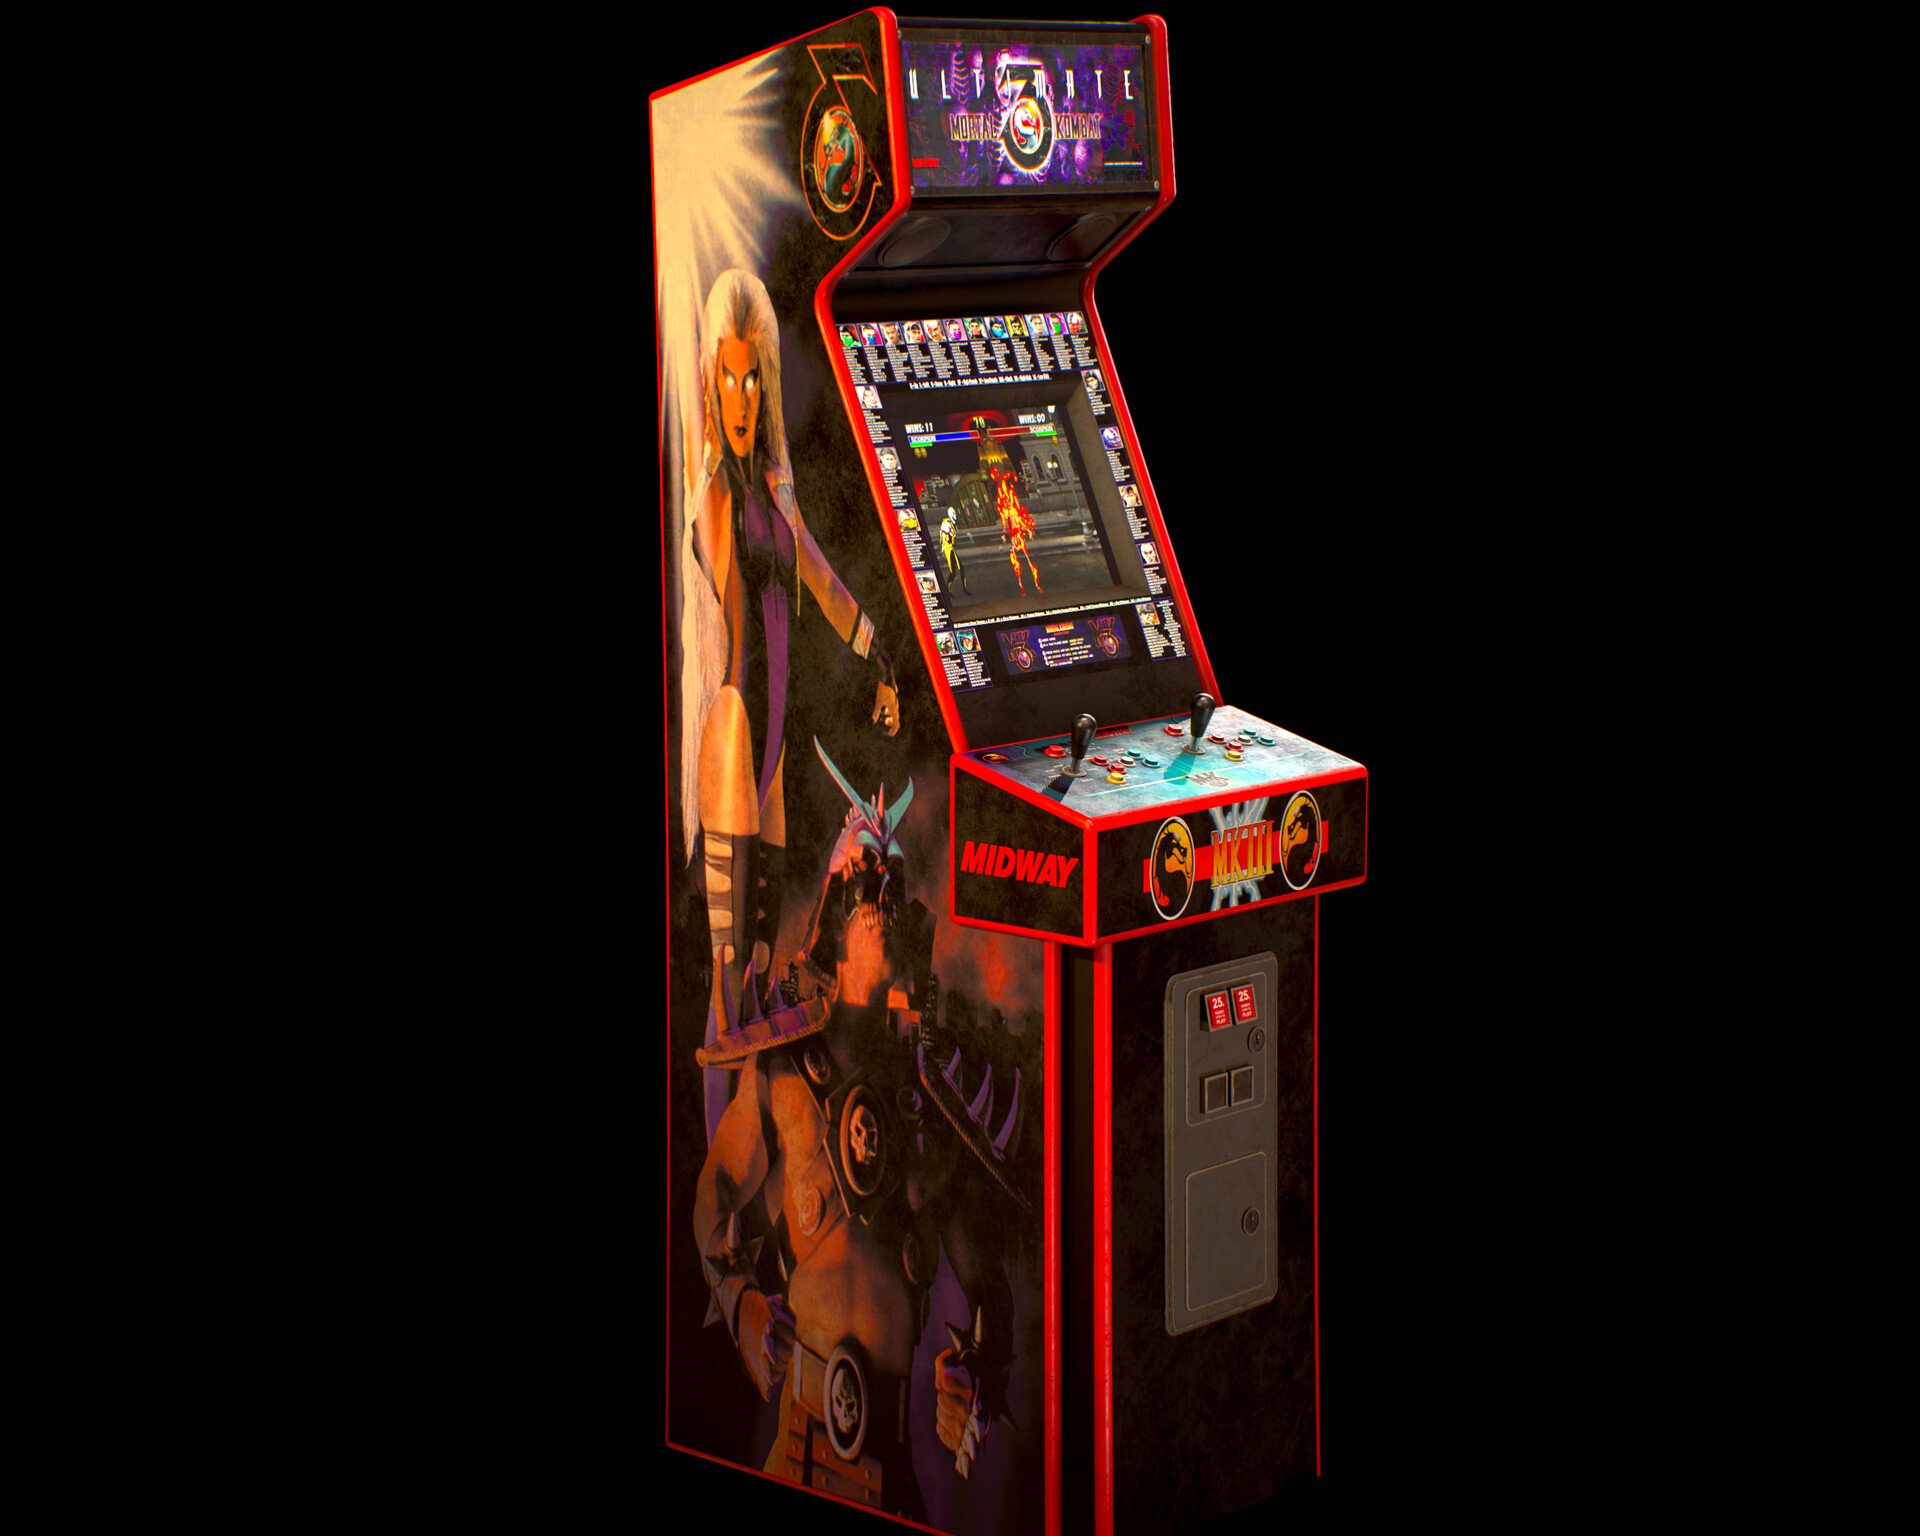 Бесплатной версии на автоматах. Аркадный автомат мортал комбат. Игровой автомат Mortal Kombat 3. Mortal Kombat 3 Arcade Machine. Игровой автомат мортал комбат.